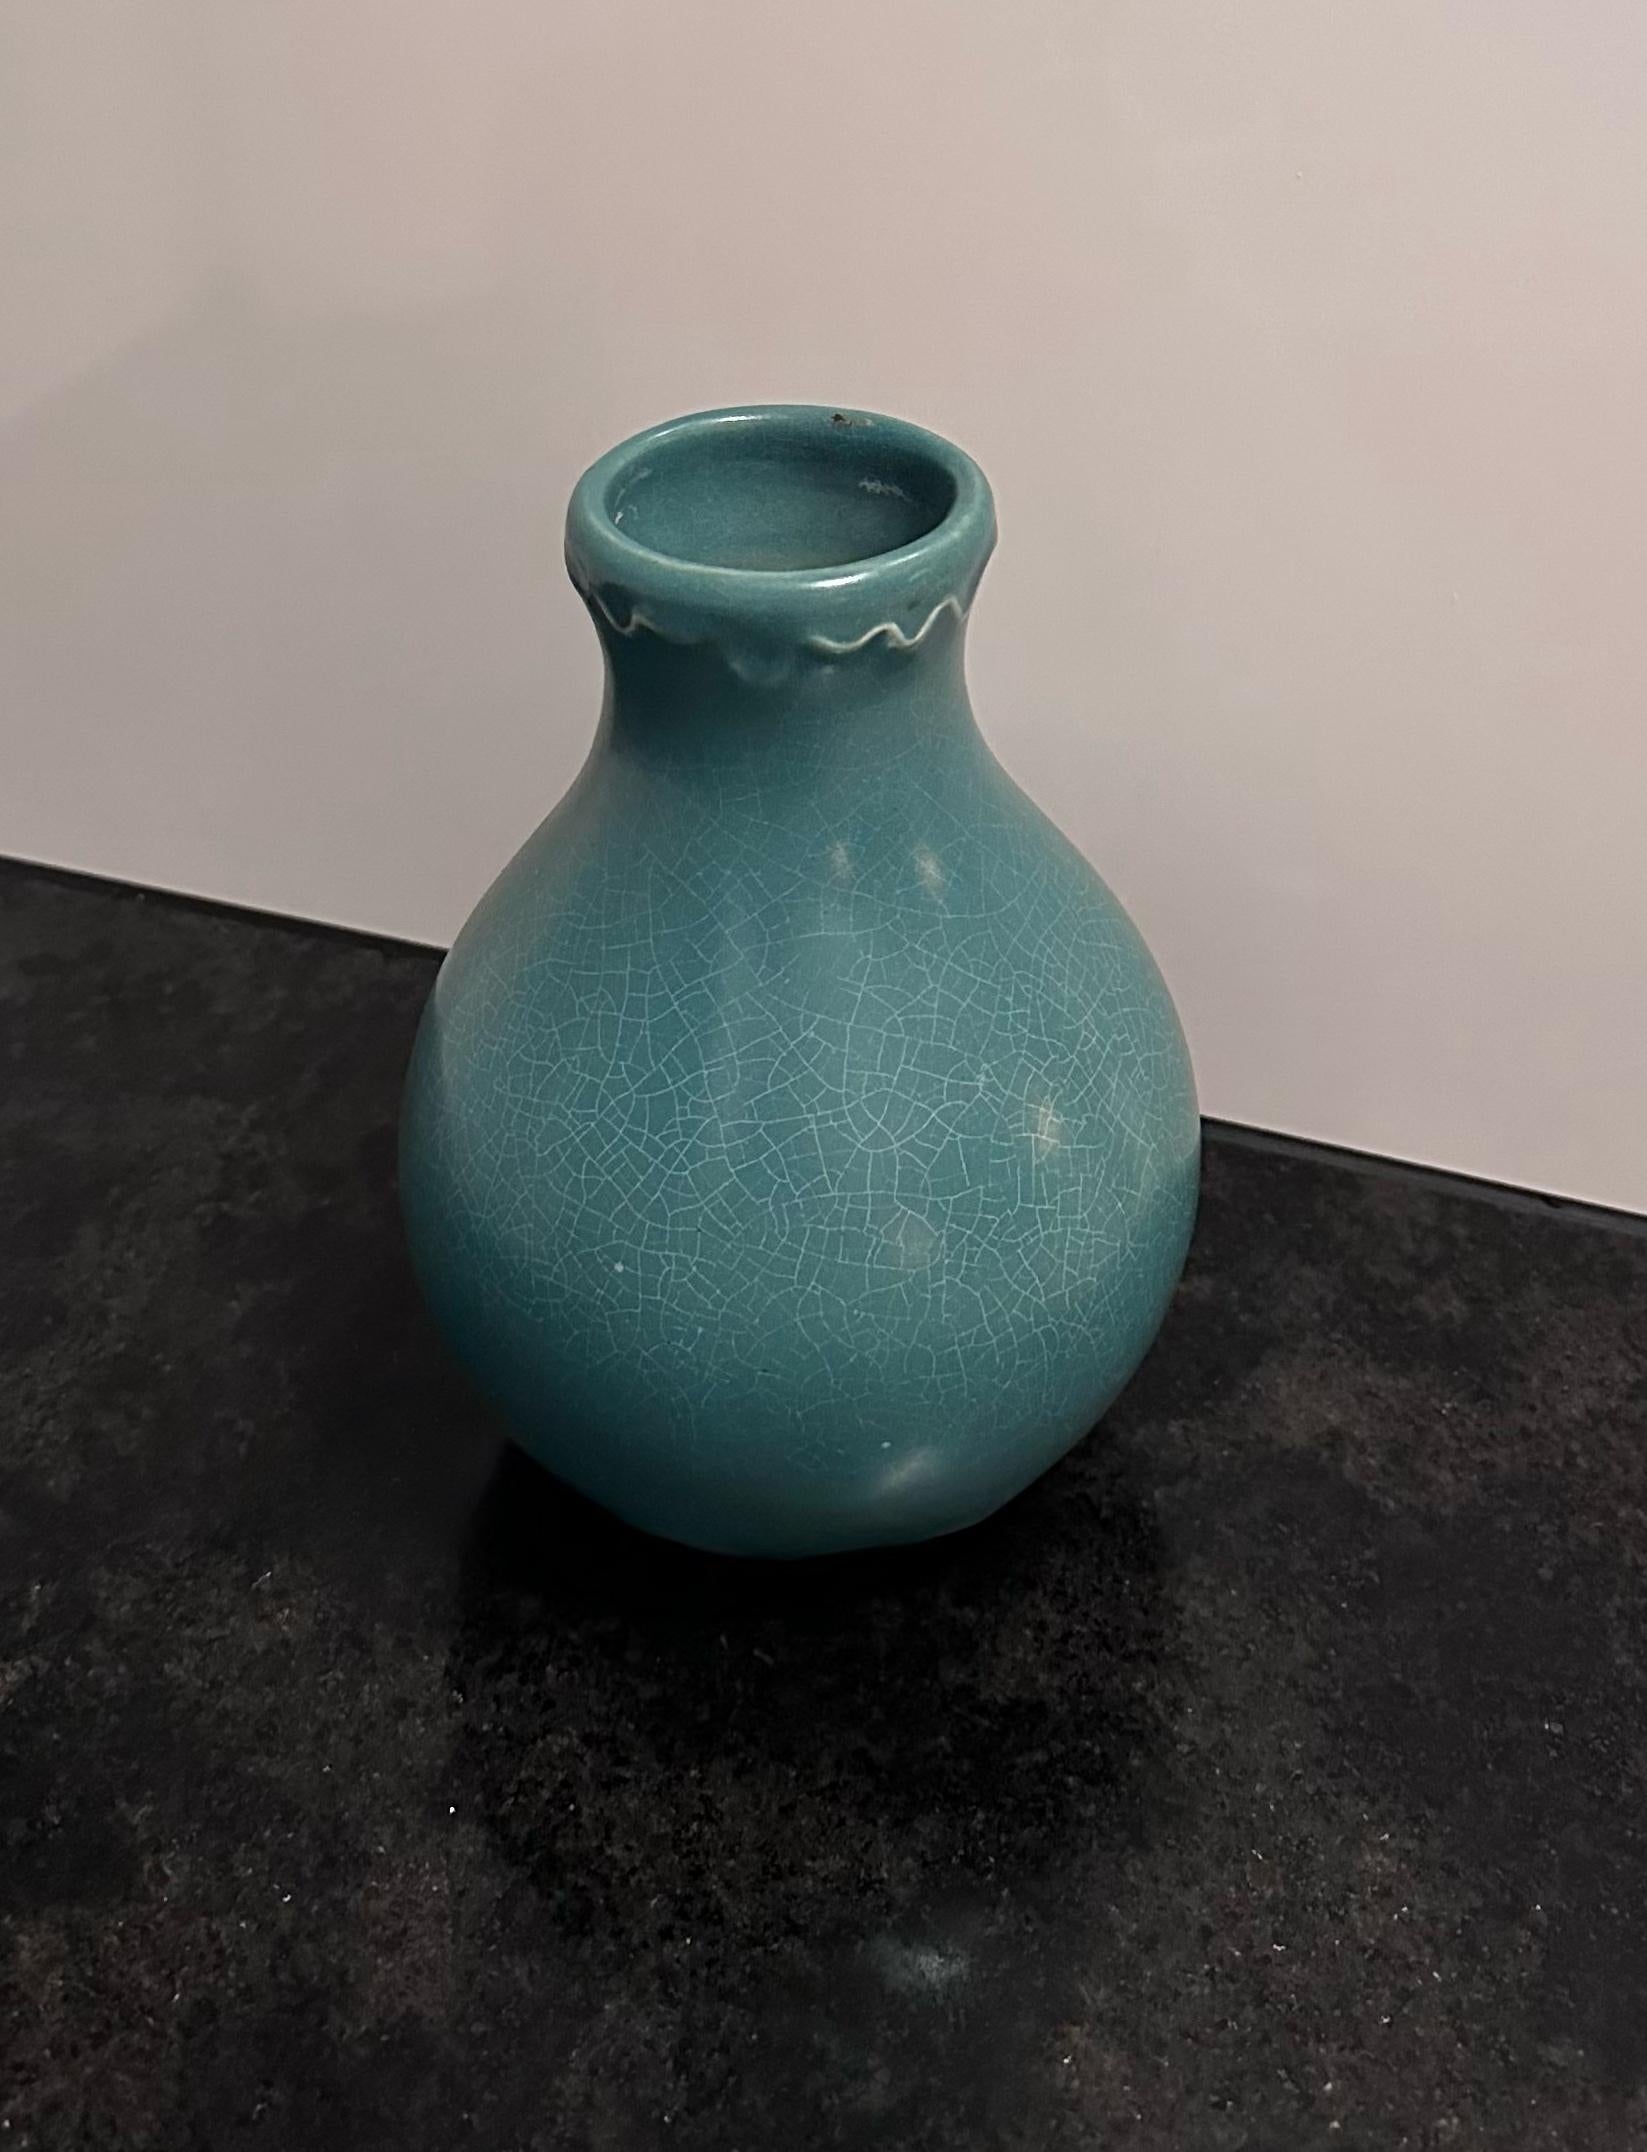 Giovanni Gariboldi (1908 - 1971) für Richard Ginori
Bedeutende Vase aus Craquelé-Keramik von Giovanni Gariboldi für Richard Ginori in matten Blautönen, Hals und Boden mit wellenförmigen Linien verziert.
Unten gestempelt mit der Nummer 6737 und